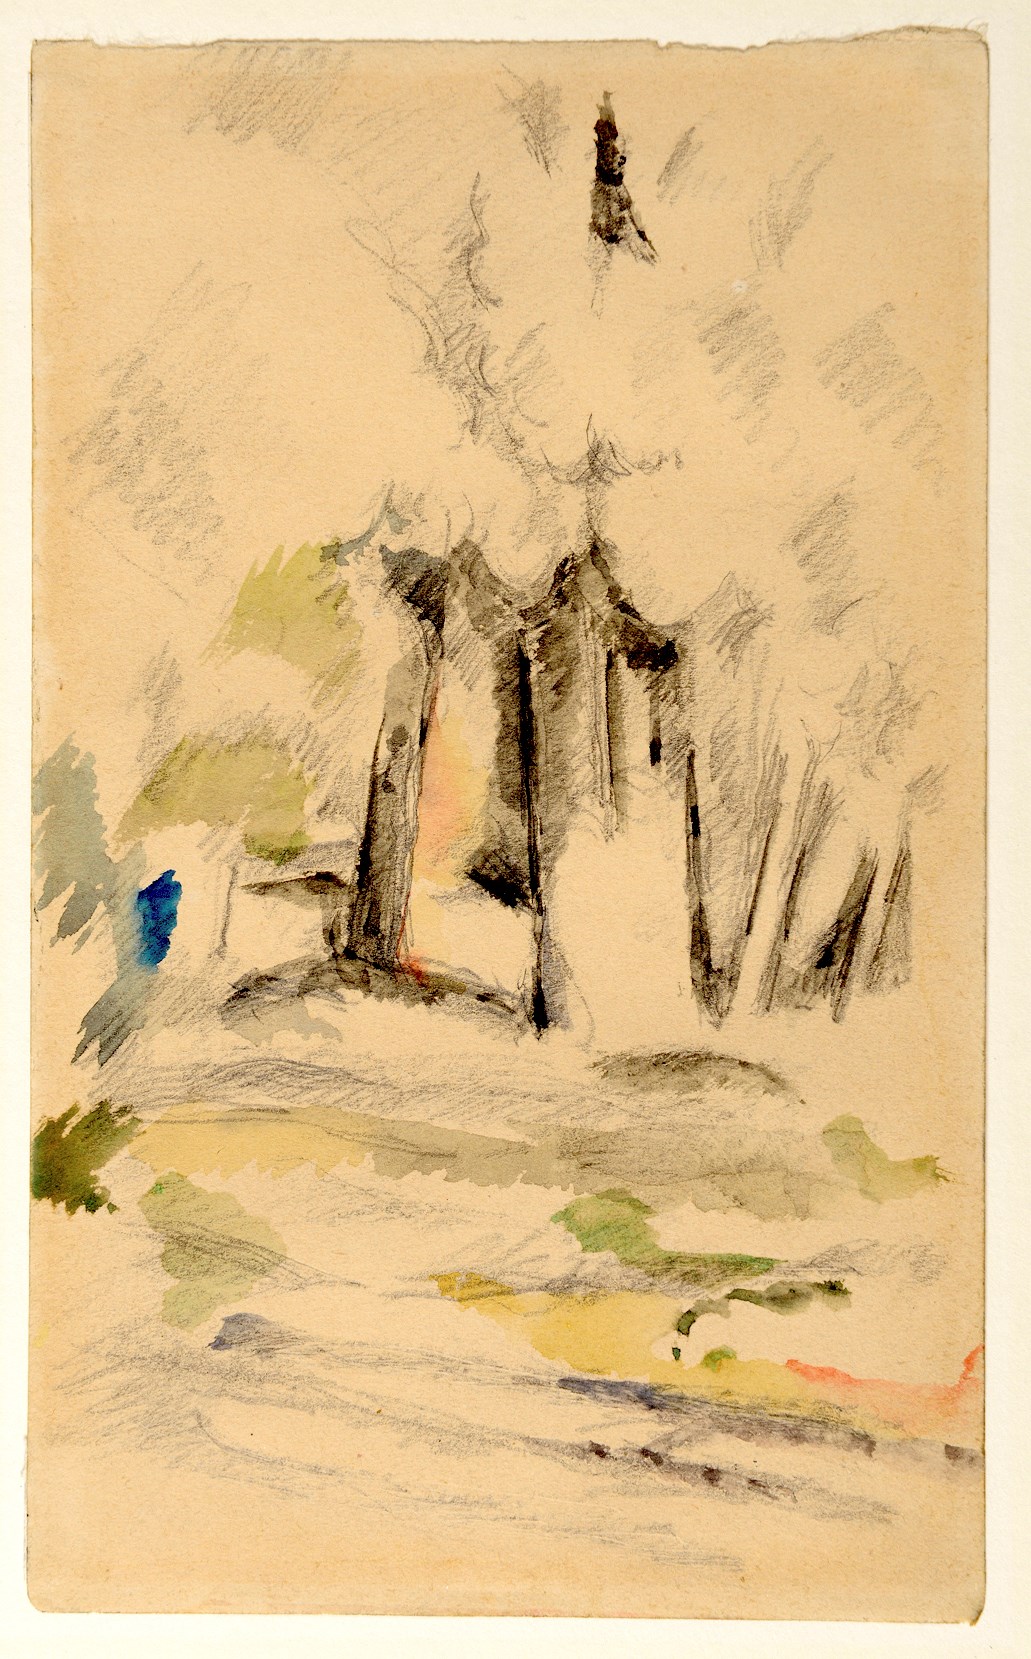 FilePaul Cézanne  Landscape in Provence  Google Art Projectjpg   Wikimedia Commons